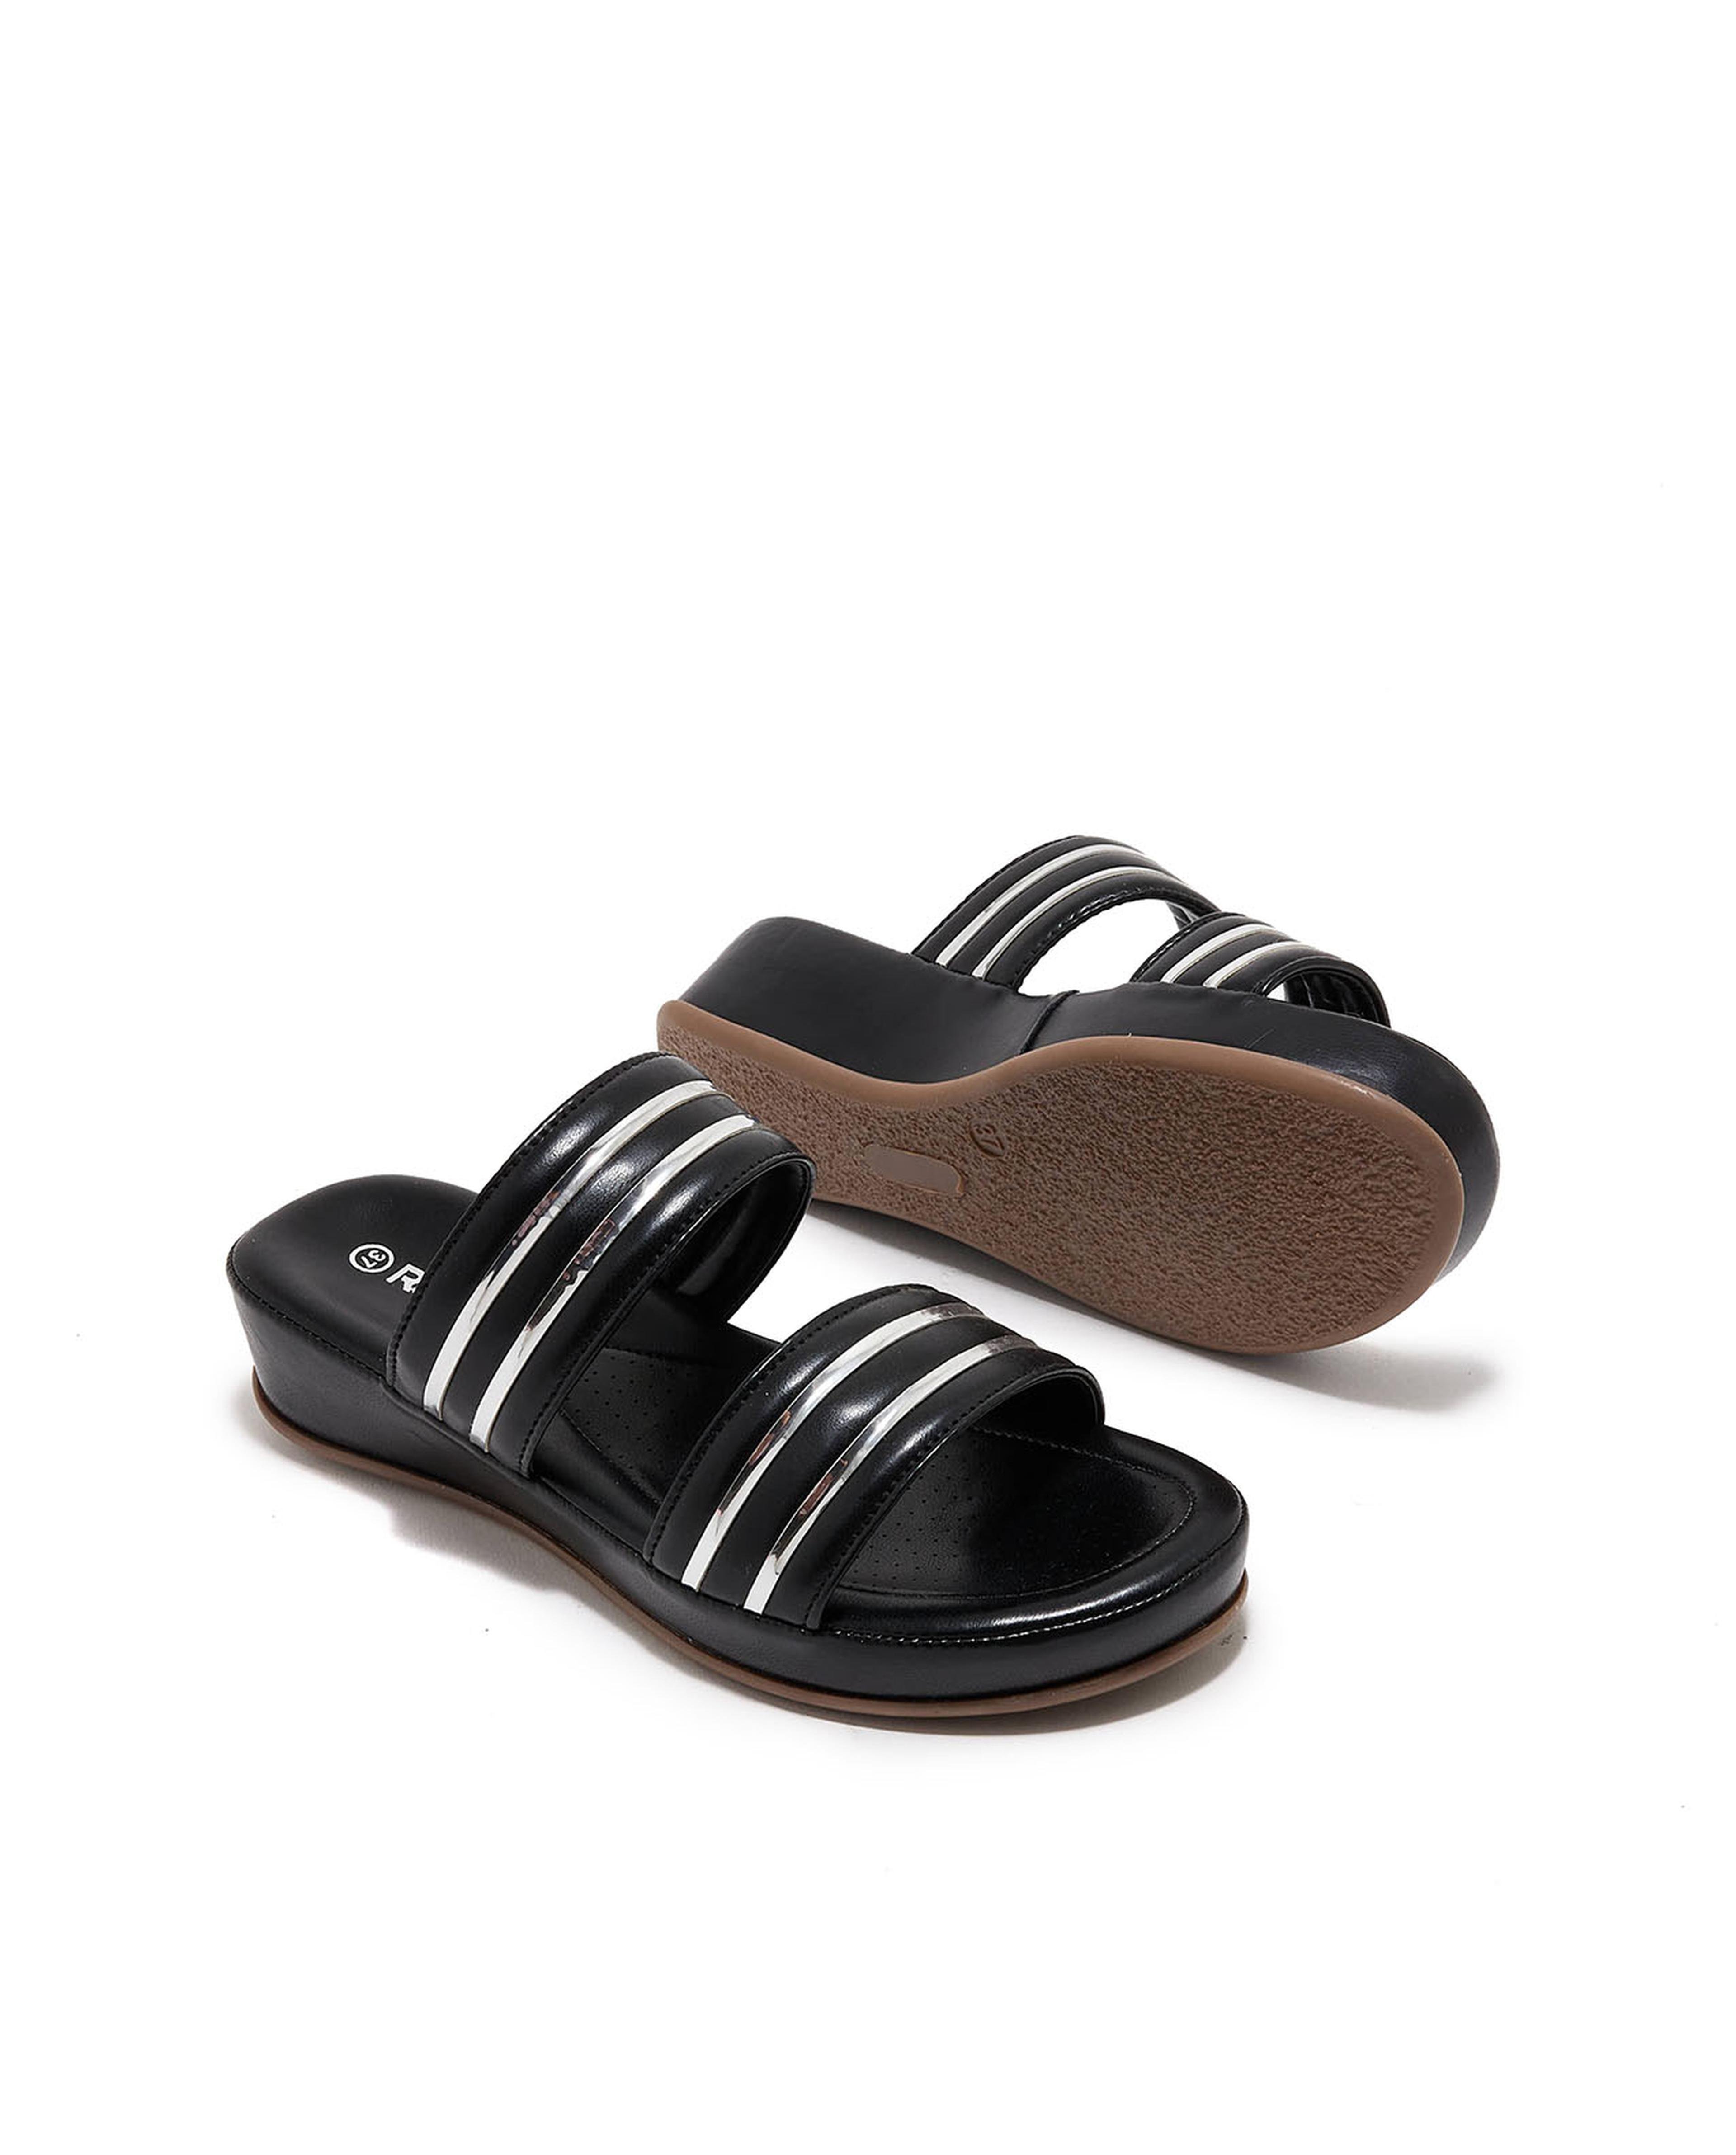 Double Strap Comfort Sandals